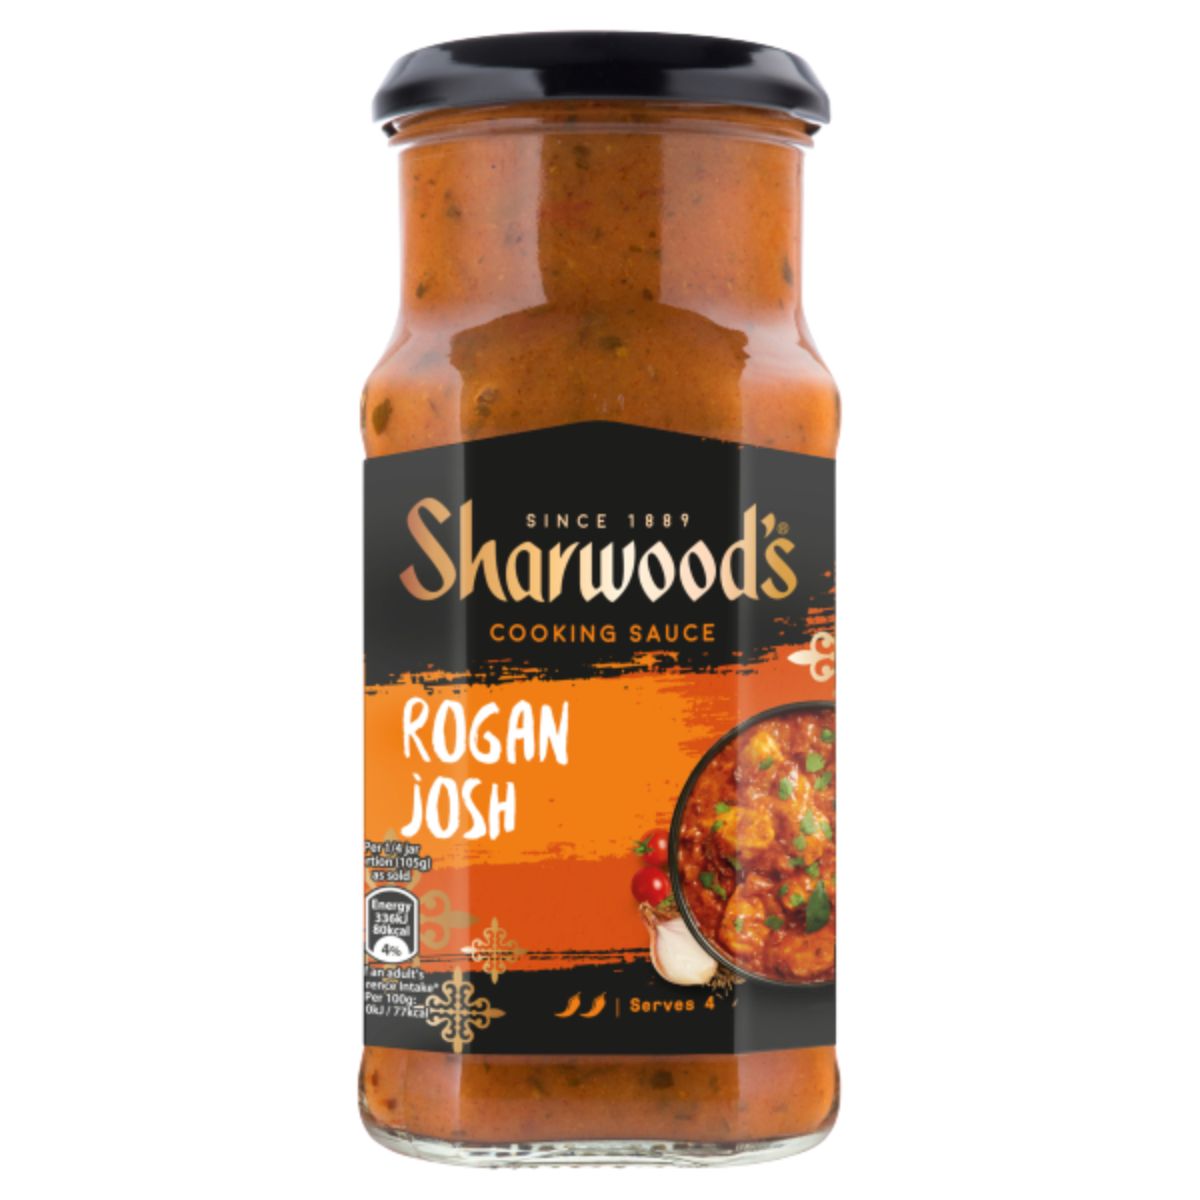 Sharwood's Rogan Josh Medium Curry Sauce - 420g - ragini joshi.